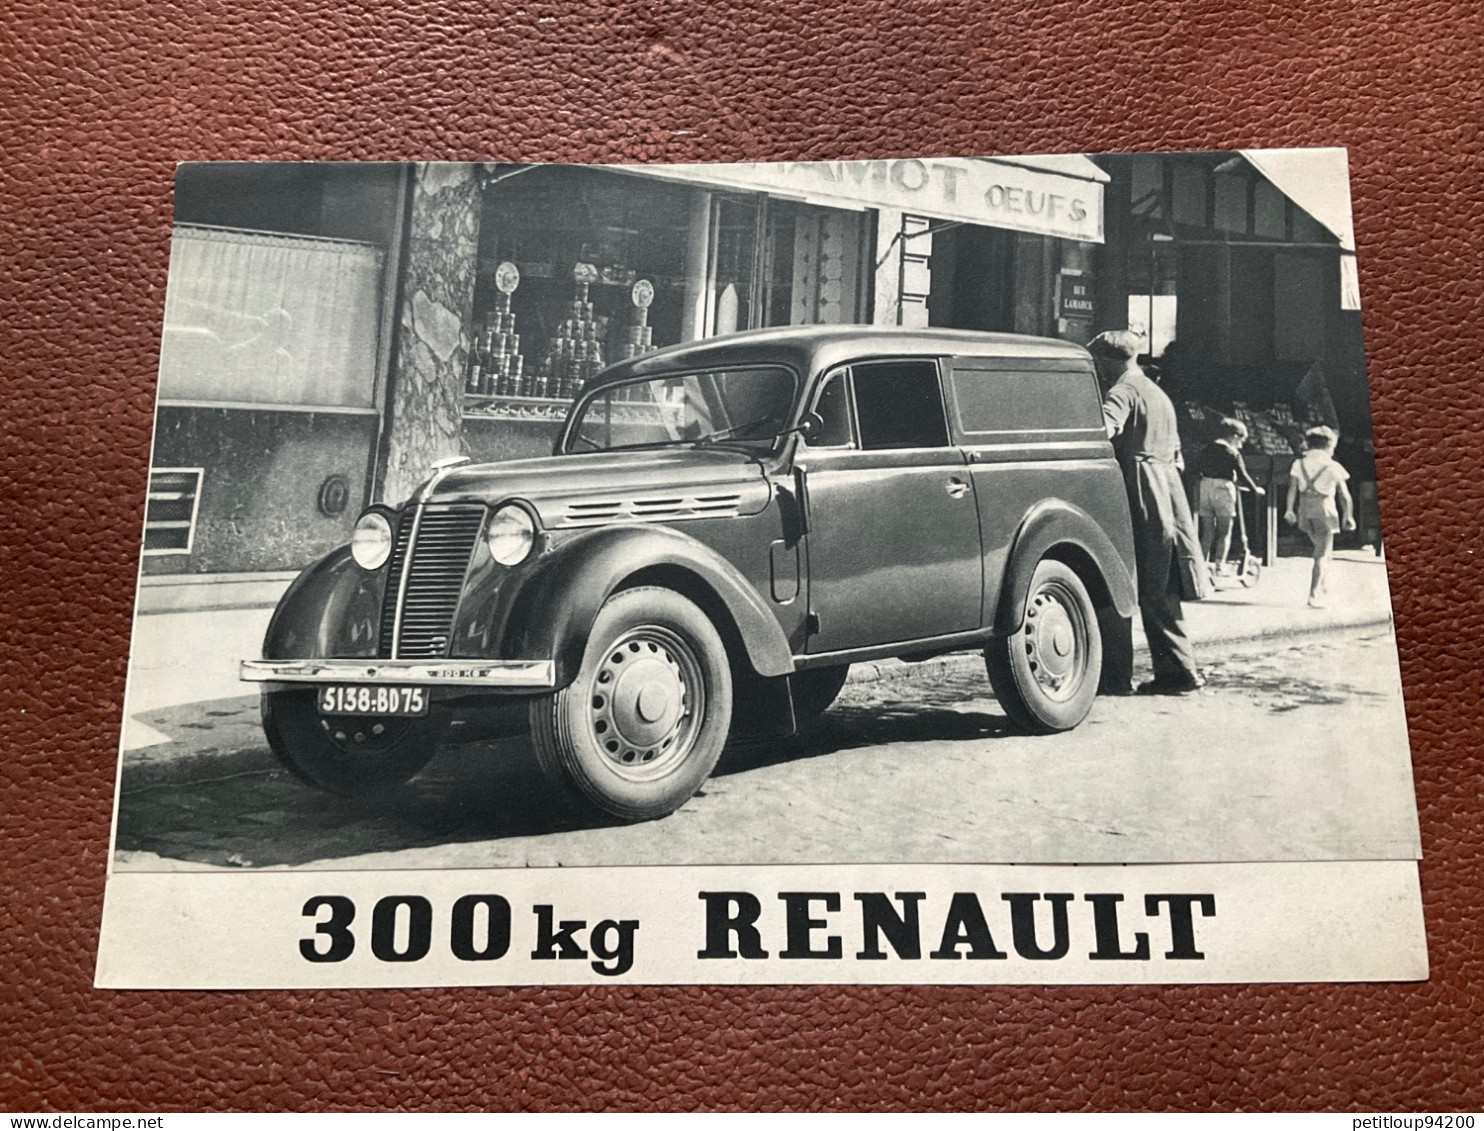 (1) DOCUMENT Commercial RENAULT Le Break 300kg - Auto's